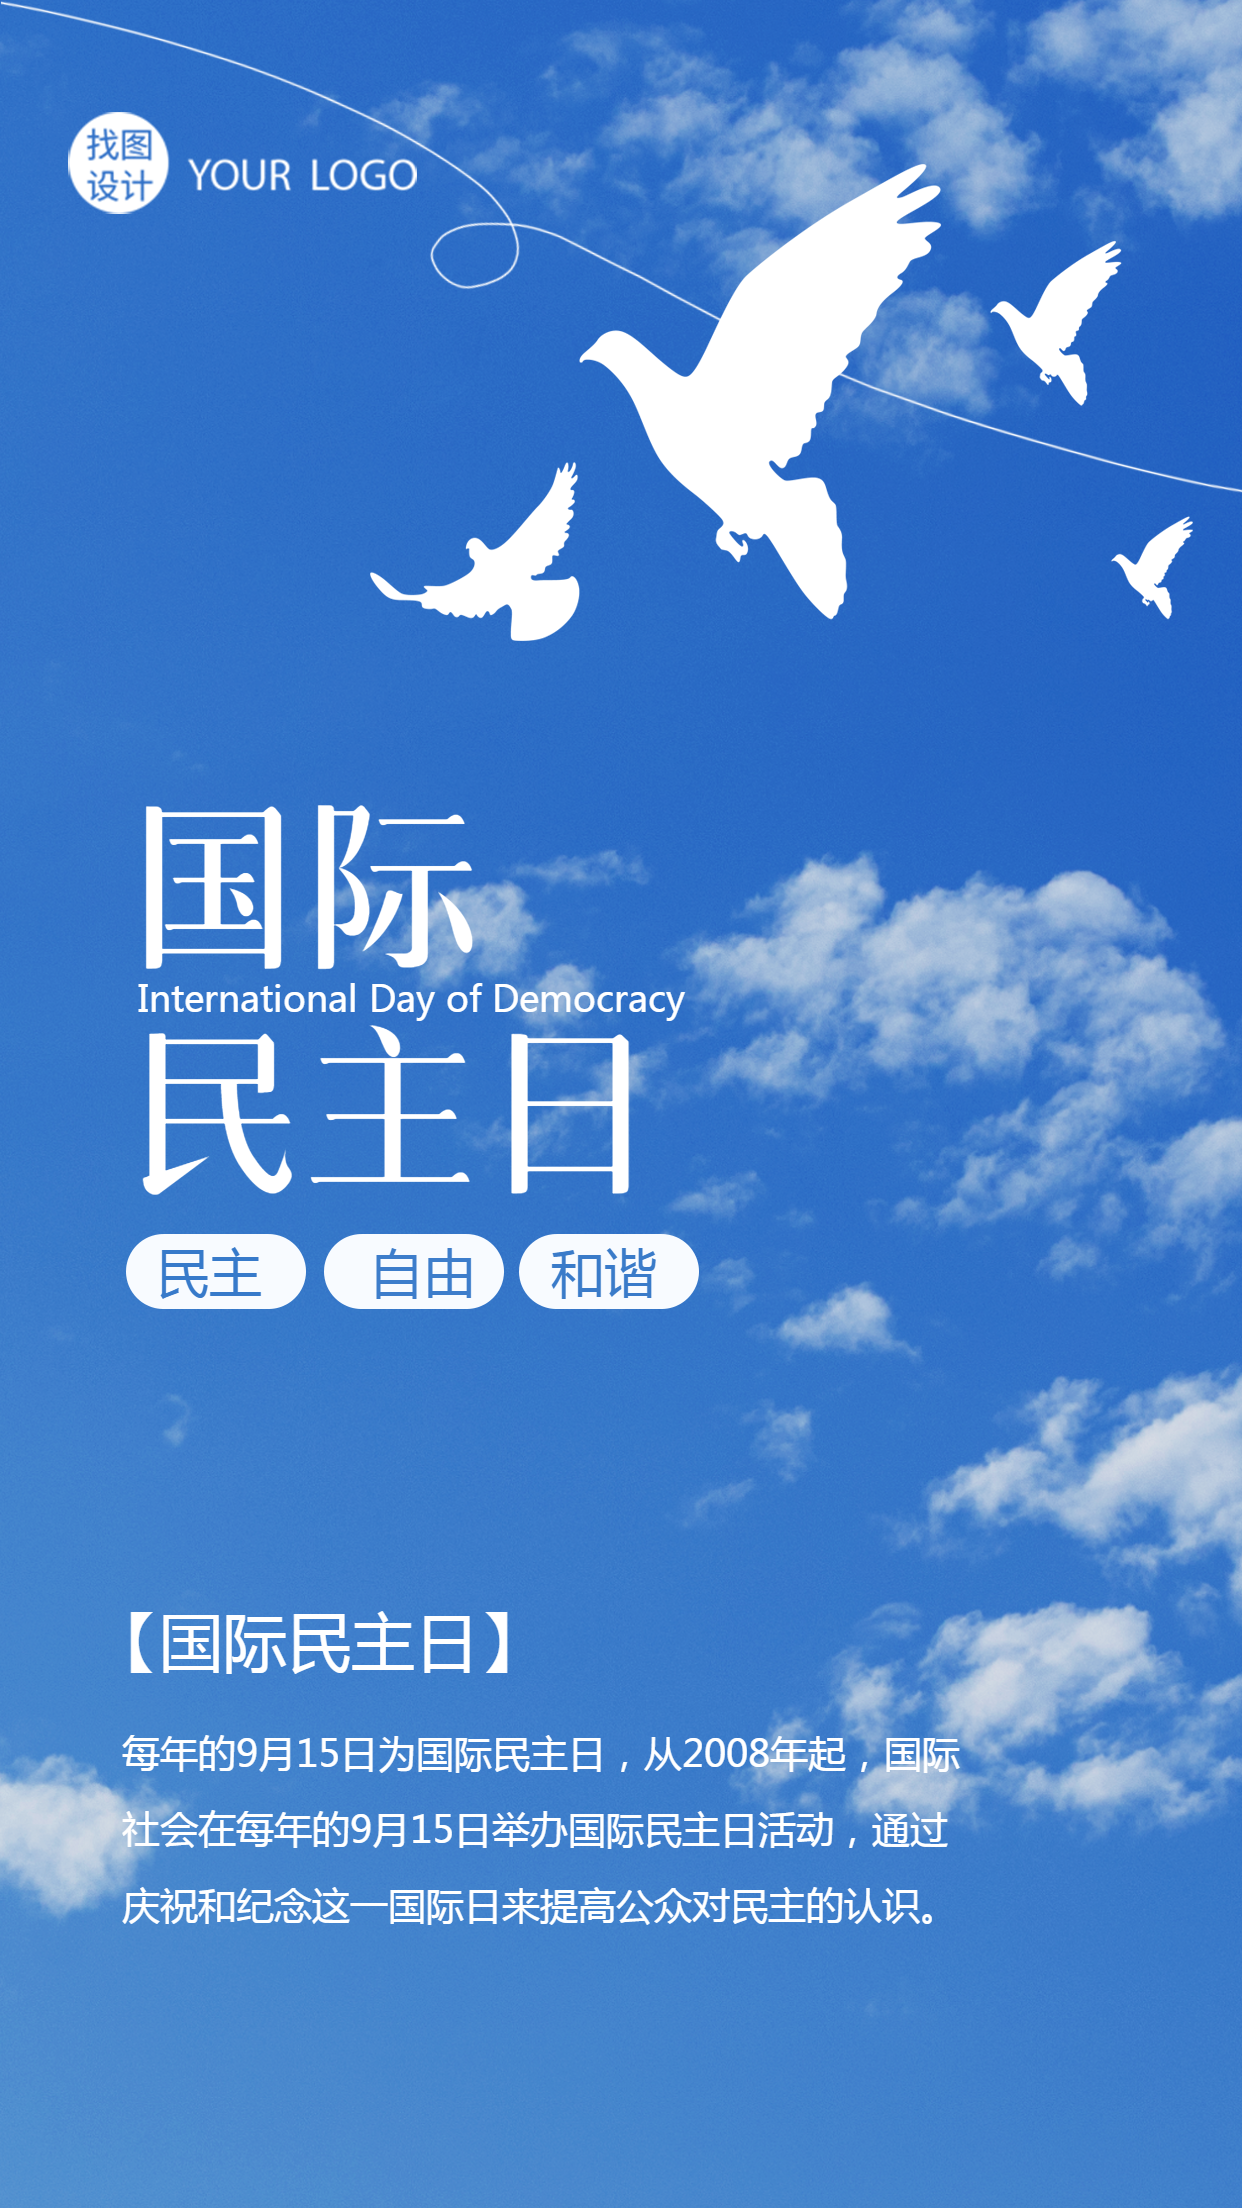 9月15日国际民主日蓝天白云实景手机海报